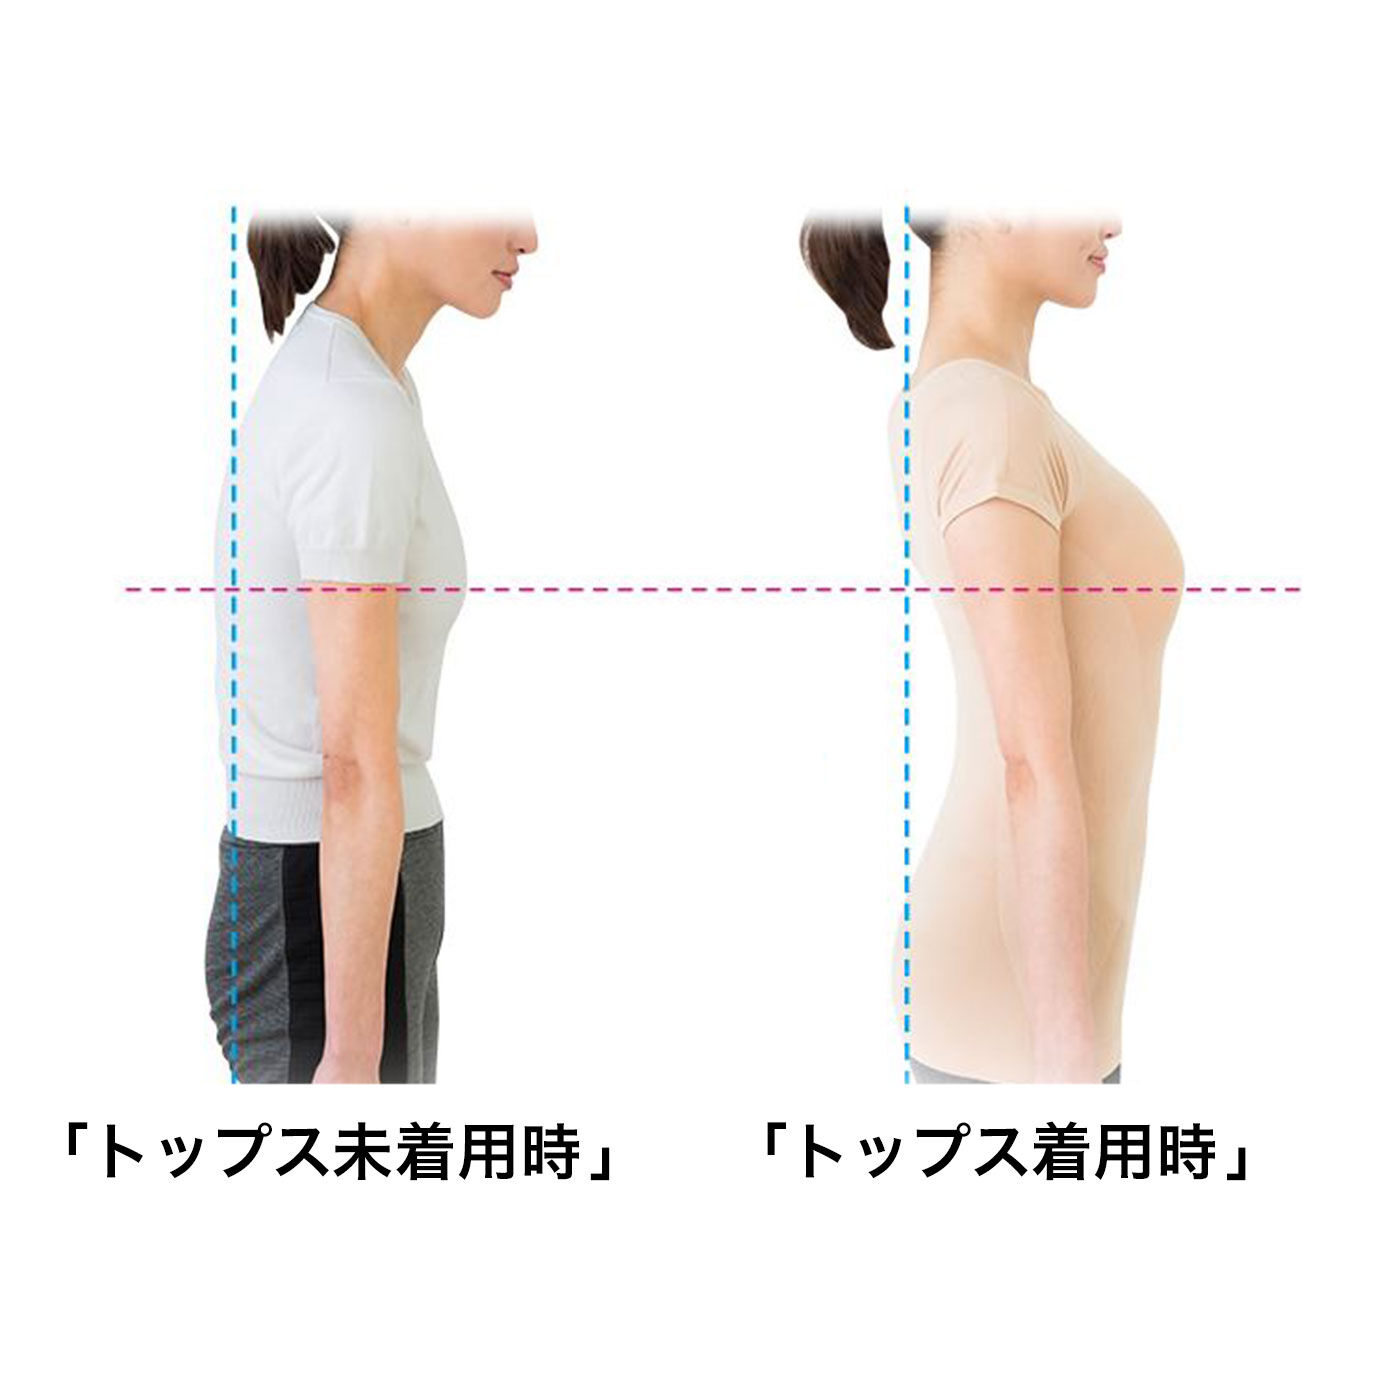 フラフィール|Dr.小倉の肩甲骨姿勢トップス〈ベージュ〉|背筋がシャキ！とすれば、バストトップも上がって、若々しい印象に。※使用感・効果には個人差があります。